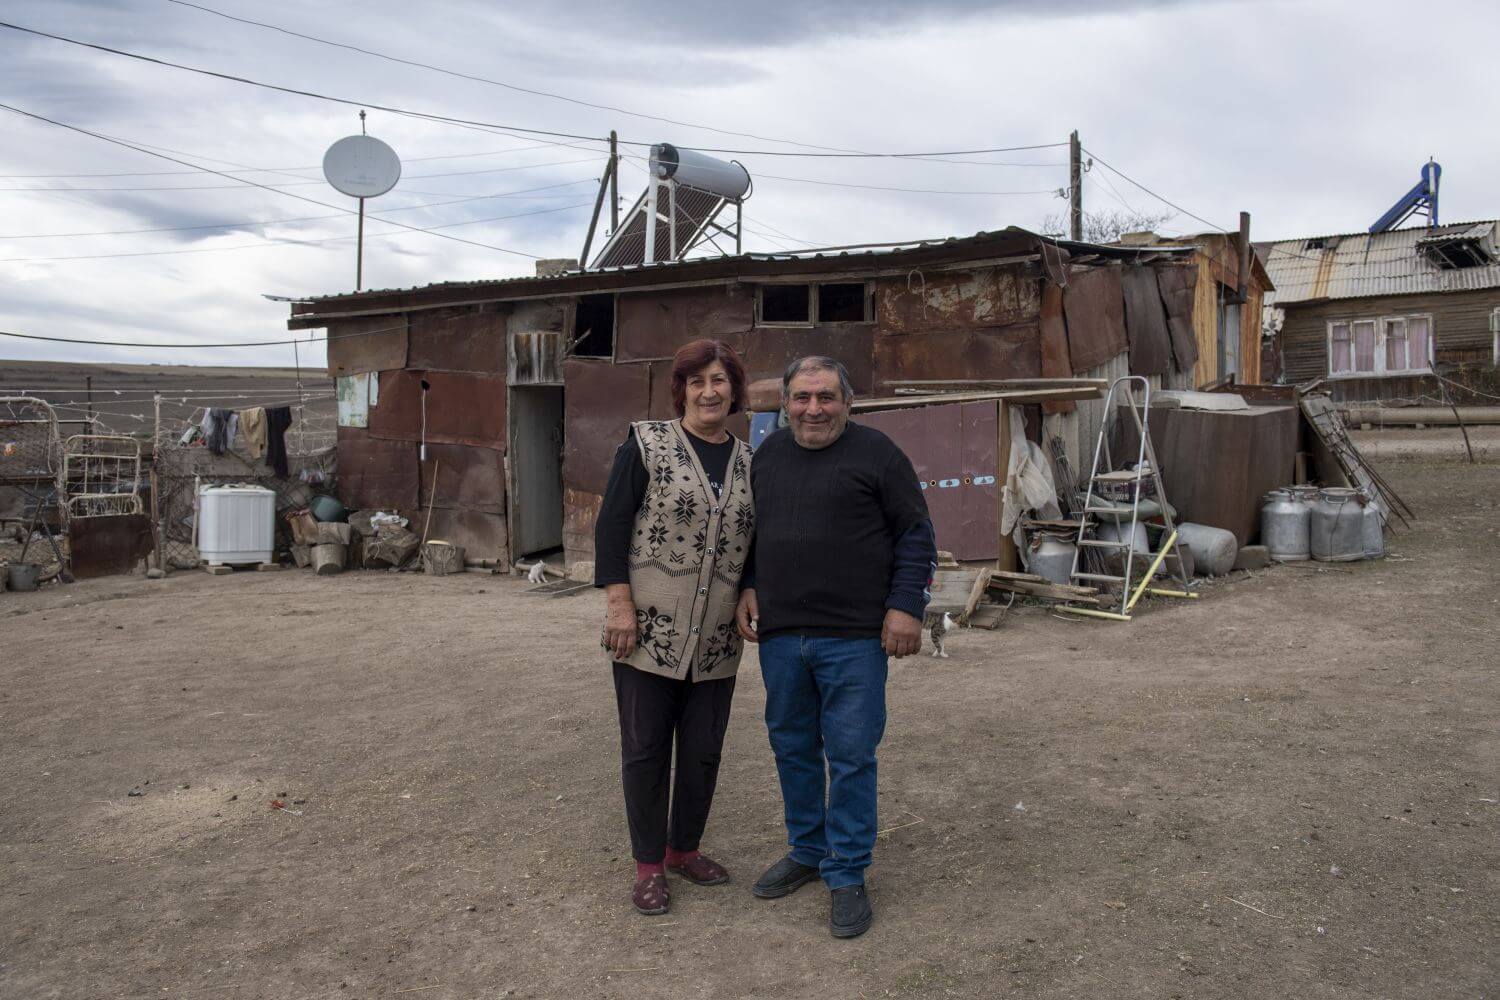 Geflohenes Ehepaar vor provisorischem Haus, nach Flucht von ihrem Heimatort in Armeinien